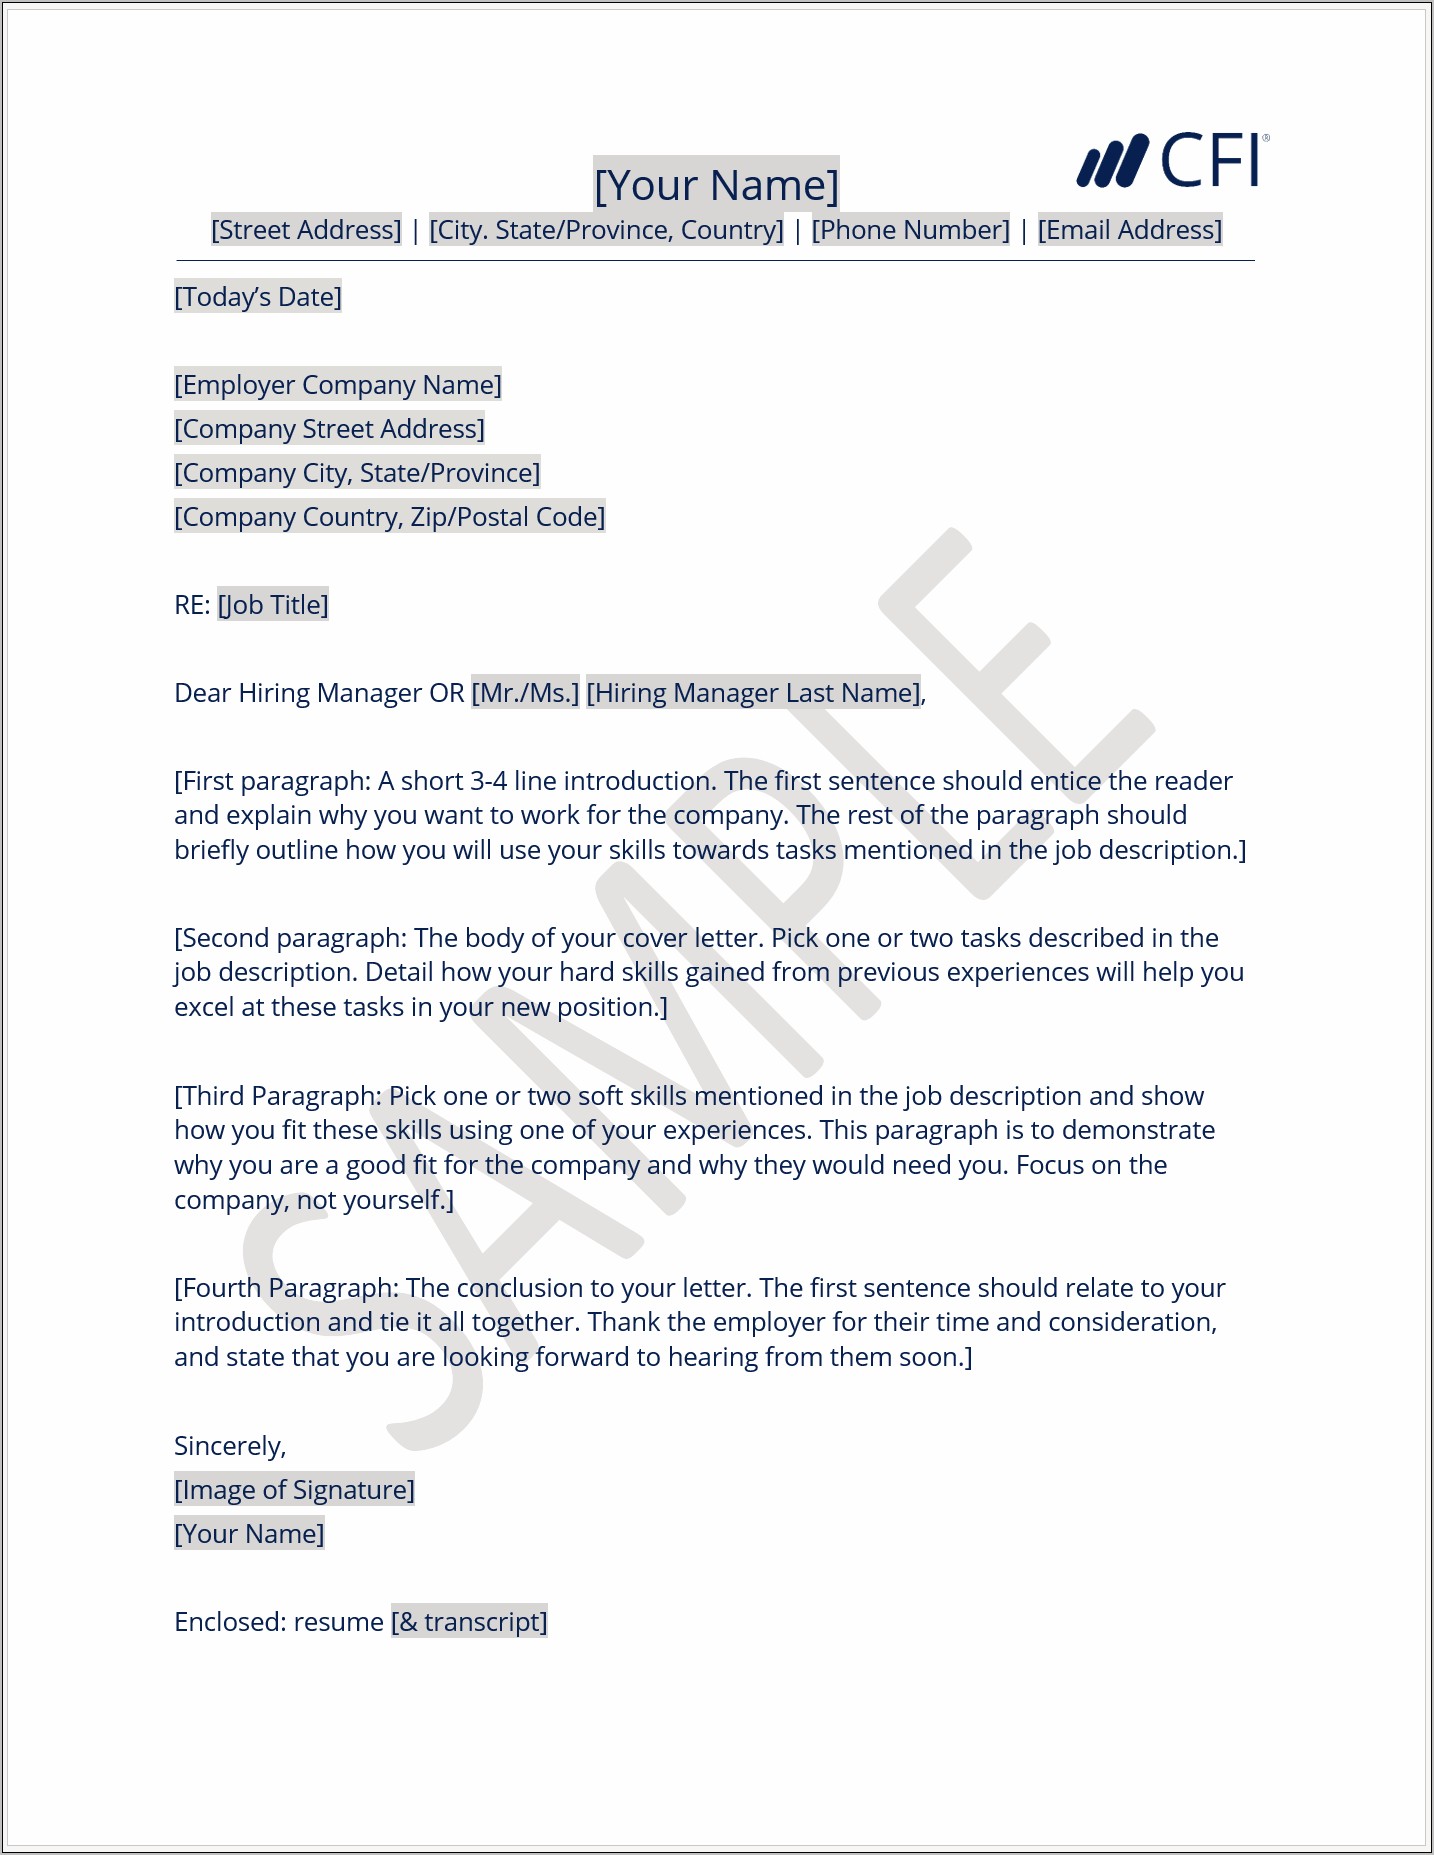 Sample Cover Letter For Sending Resume